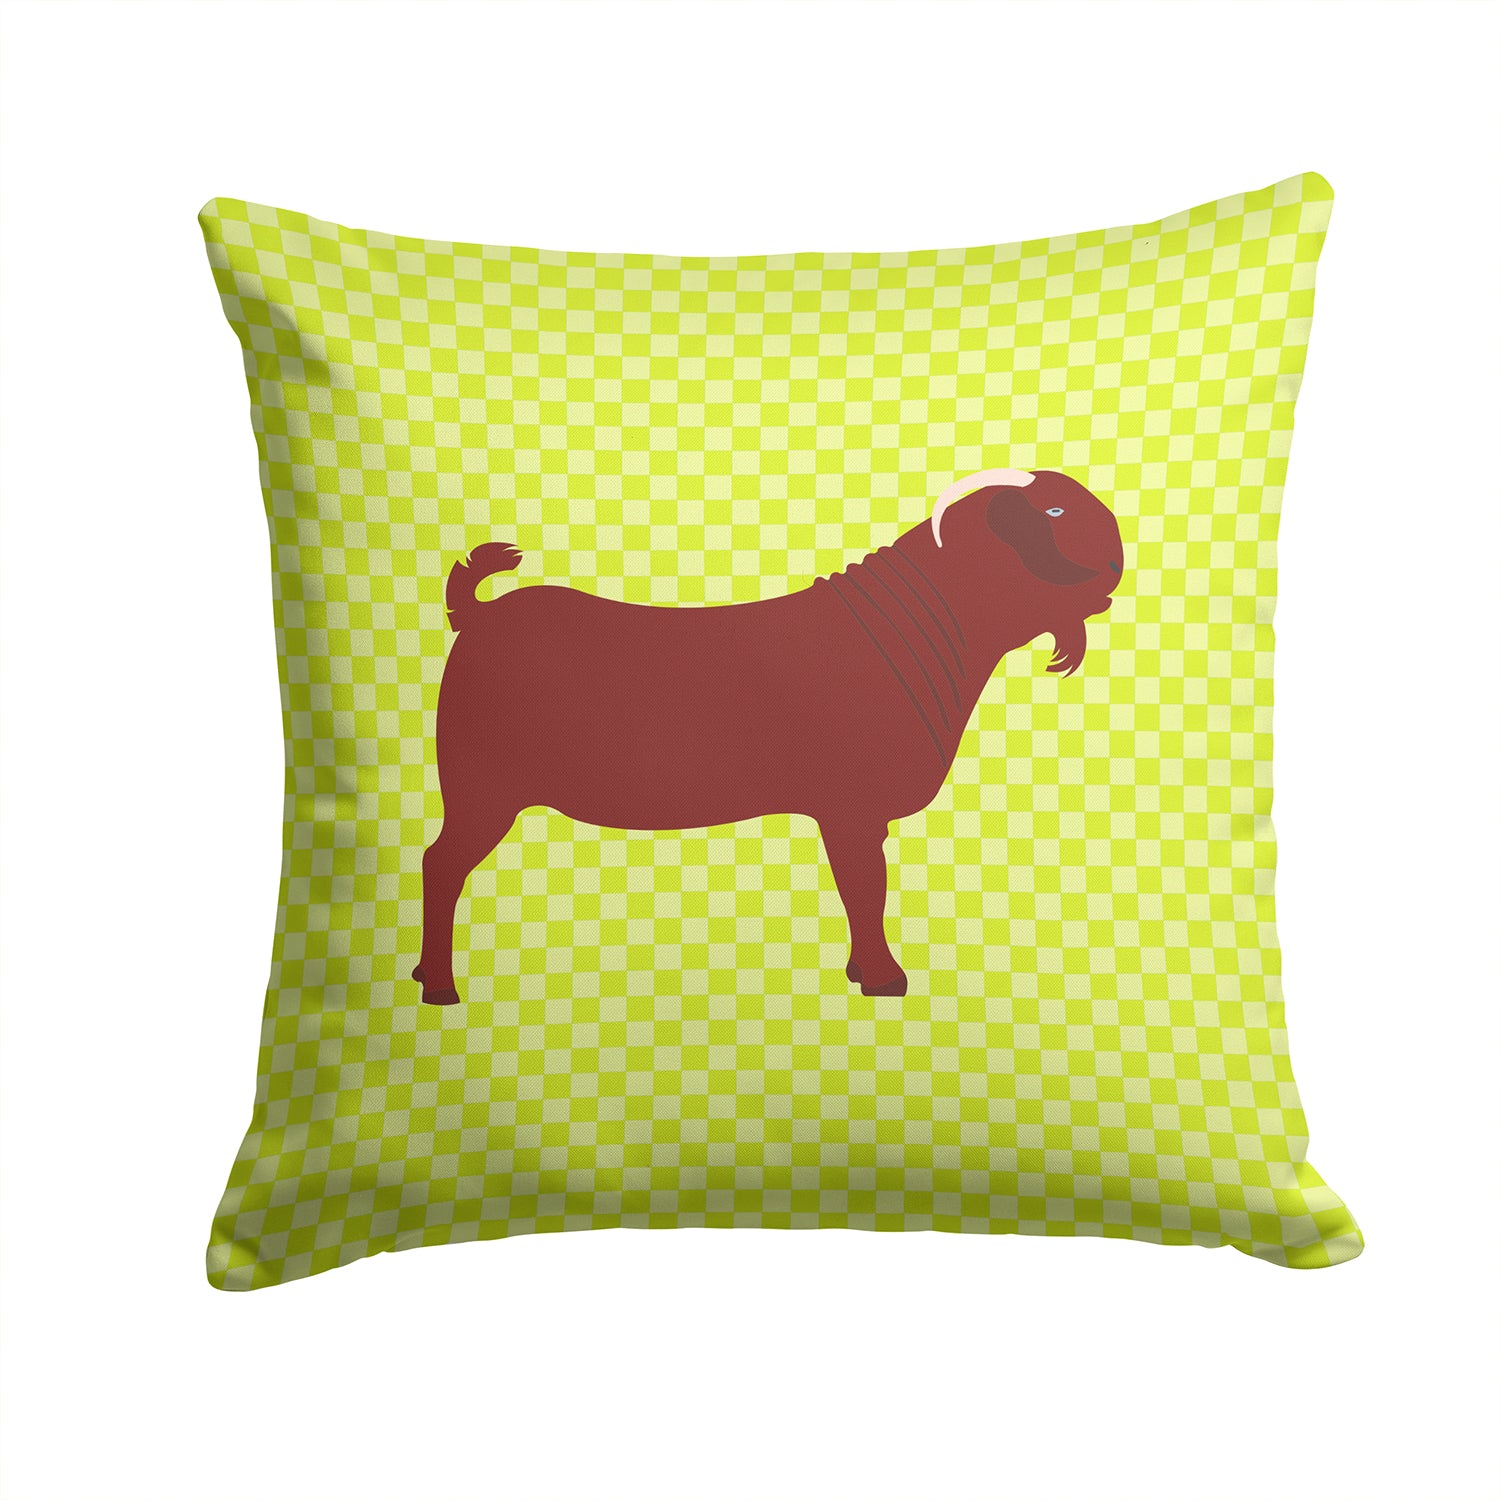 Kalahari Red Goat Green Fabric Decorative Pillow BB7717PW1414 - the-store.com